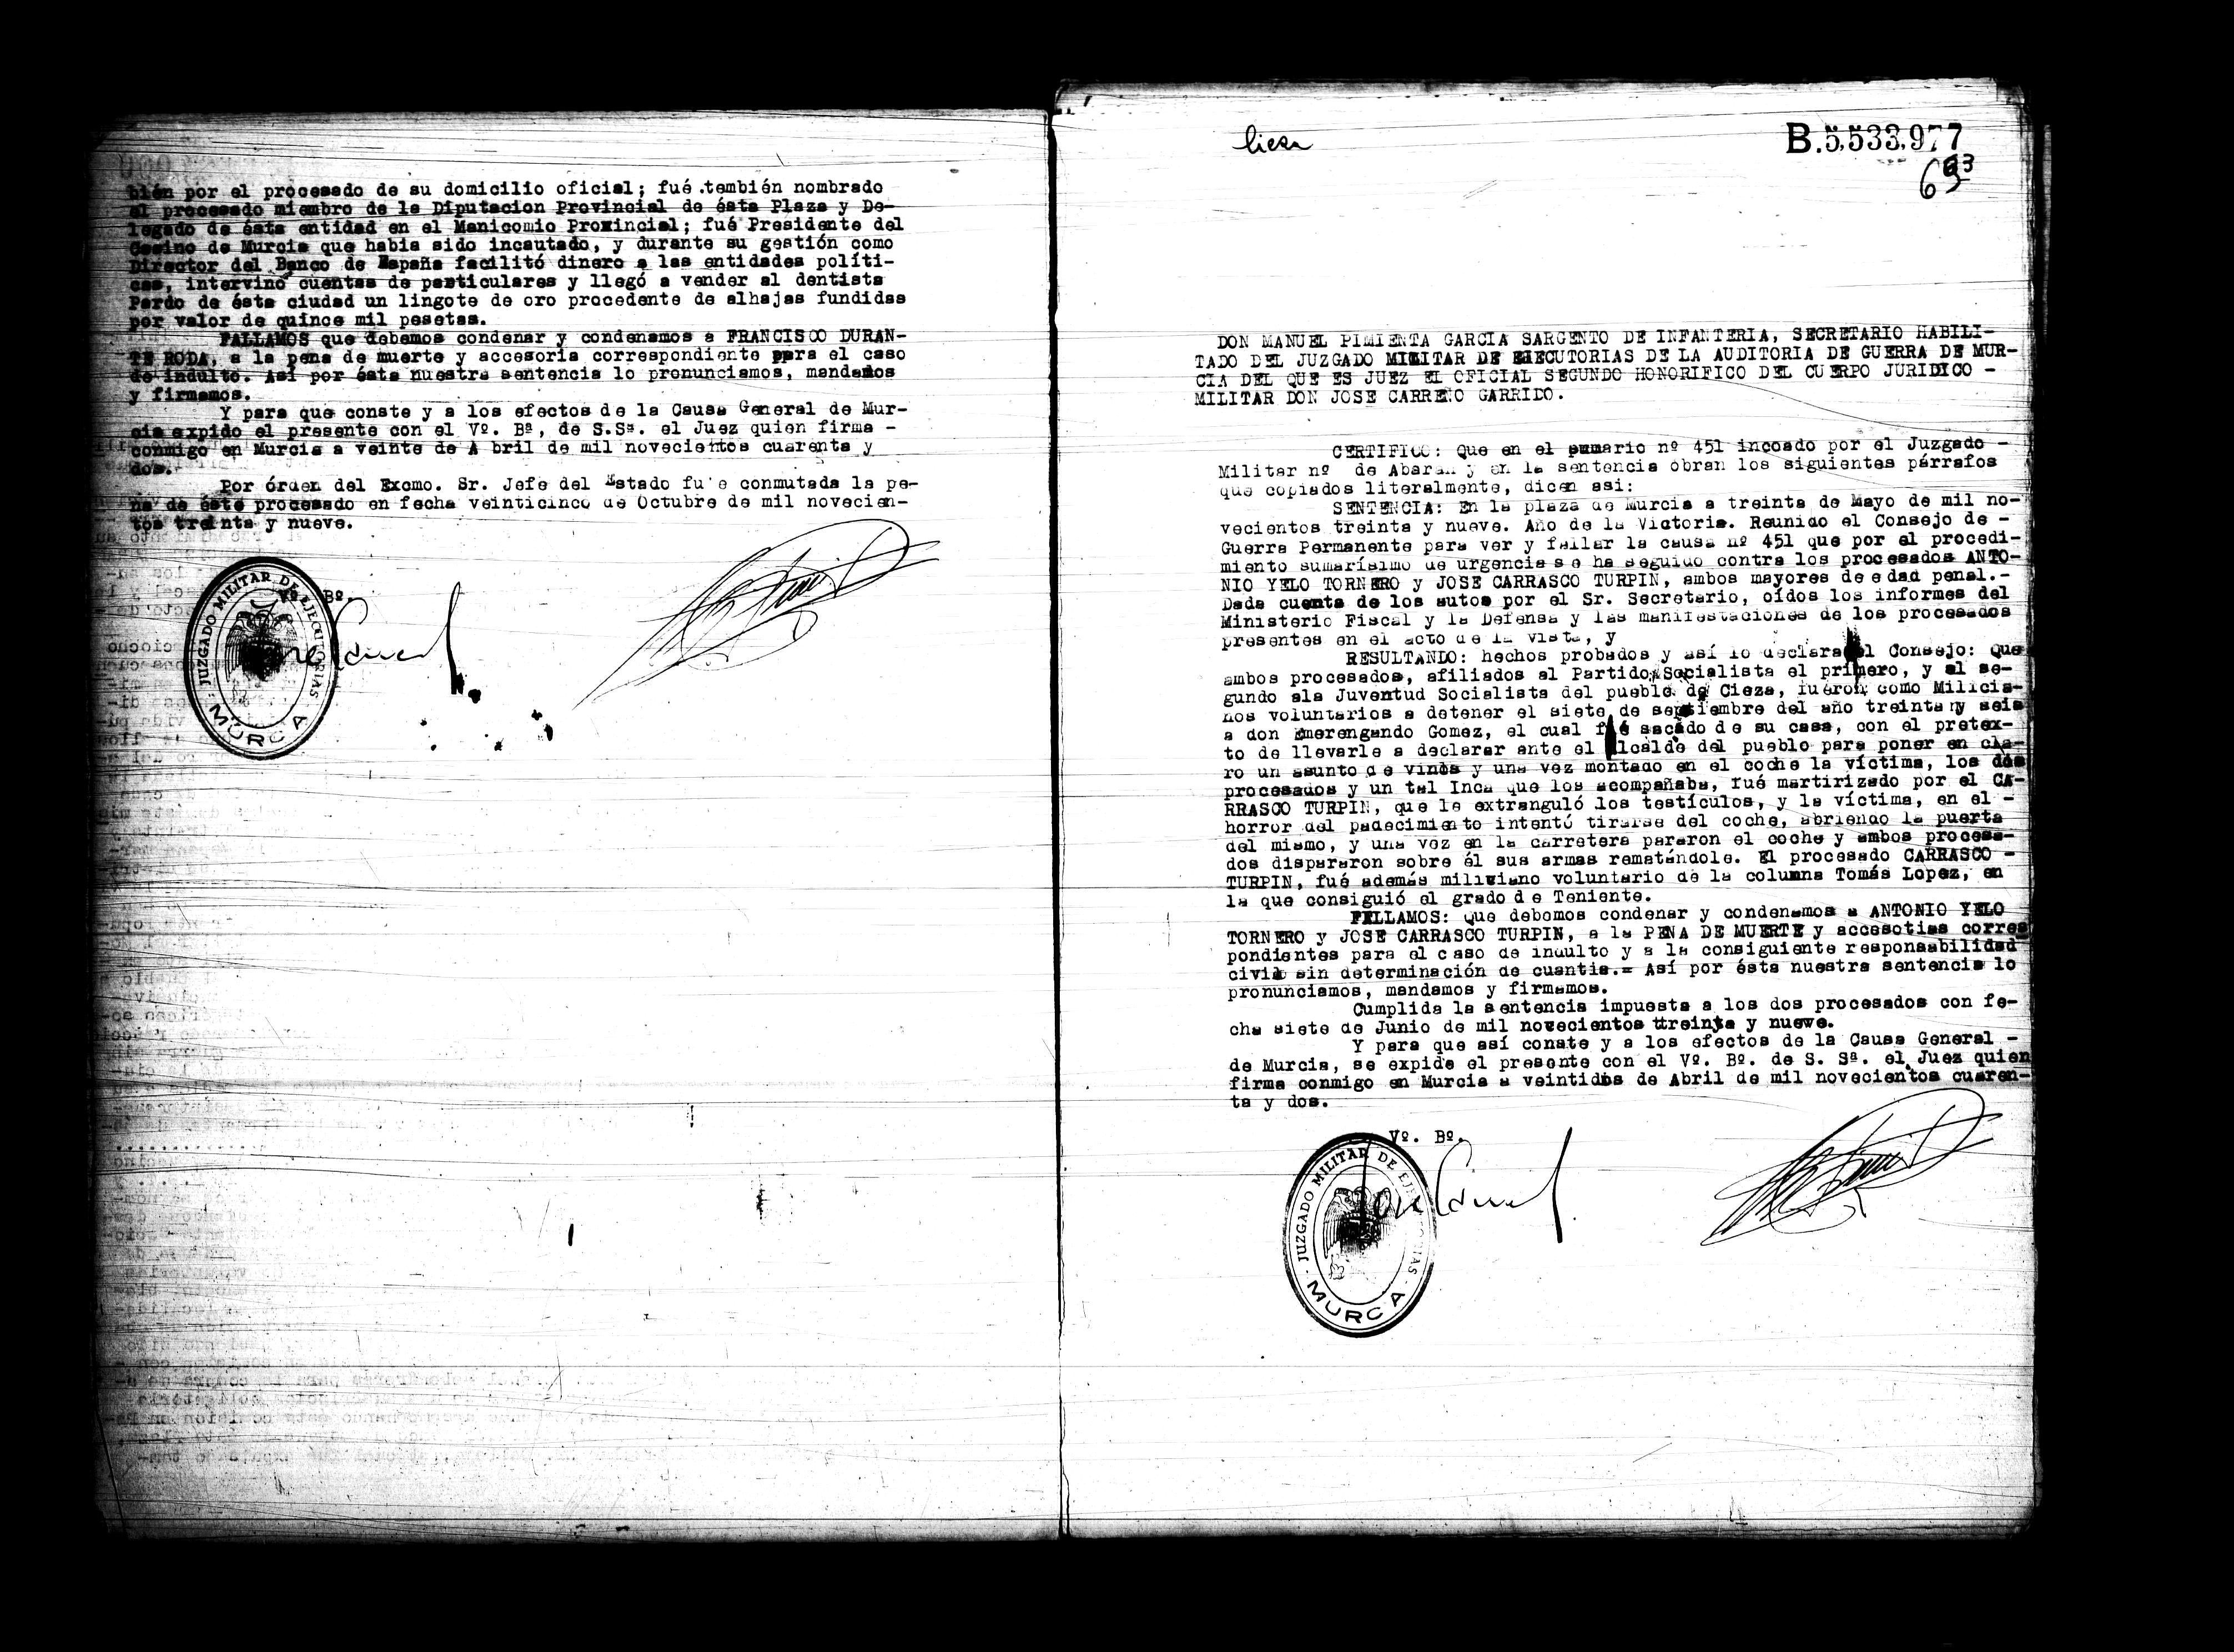 Certificado de la sentencia pronunciada contra Antonio Yelo Tornero y José Carrasco Turpín, causa 451, el 30 de mayo de 1939 en Murcia.